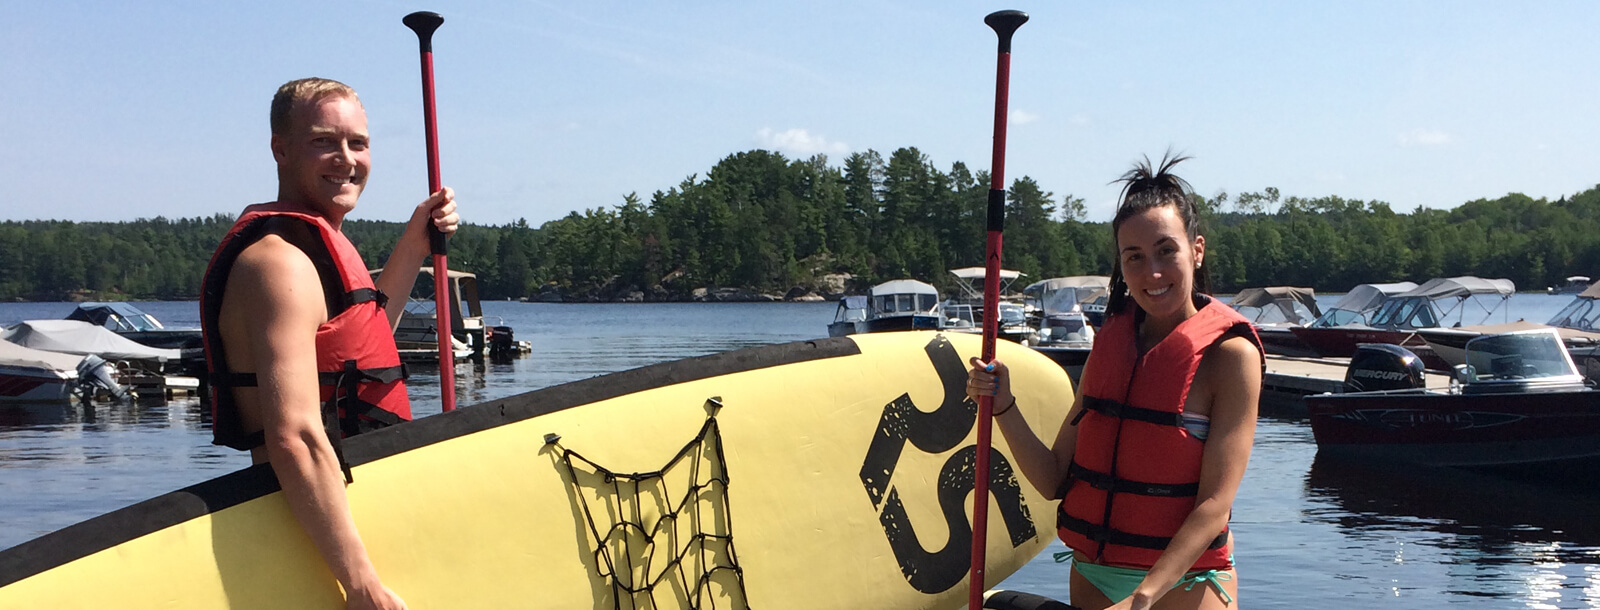 paddleboard-&-kayak-rental-page-header